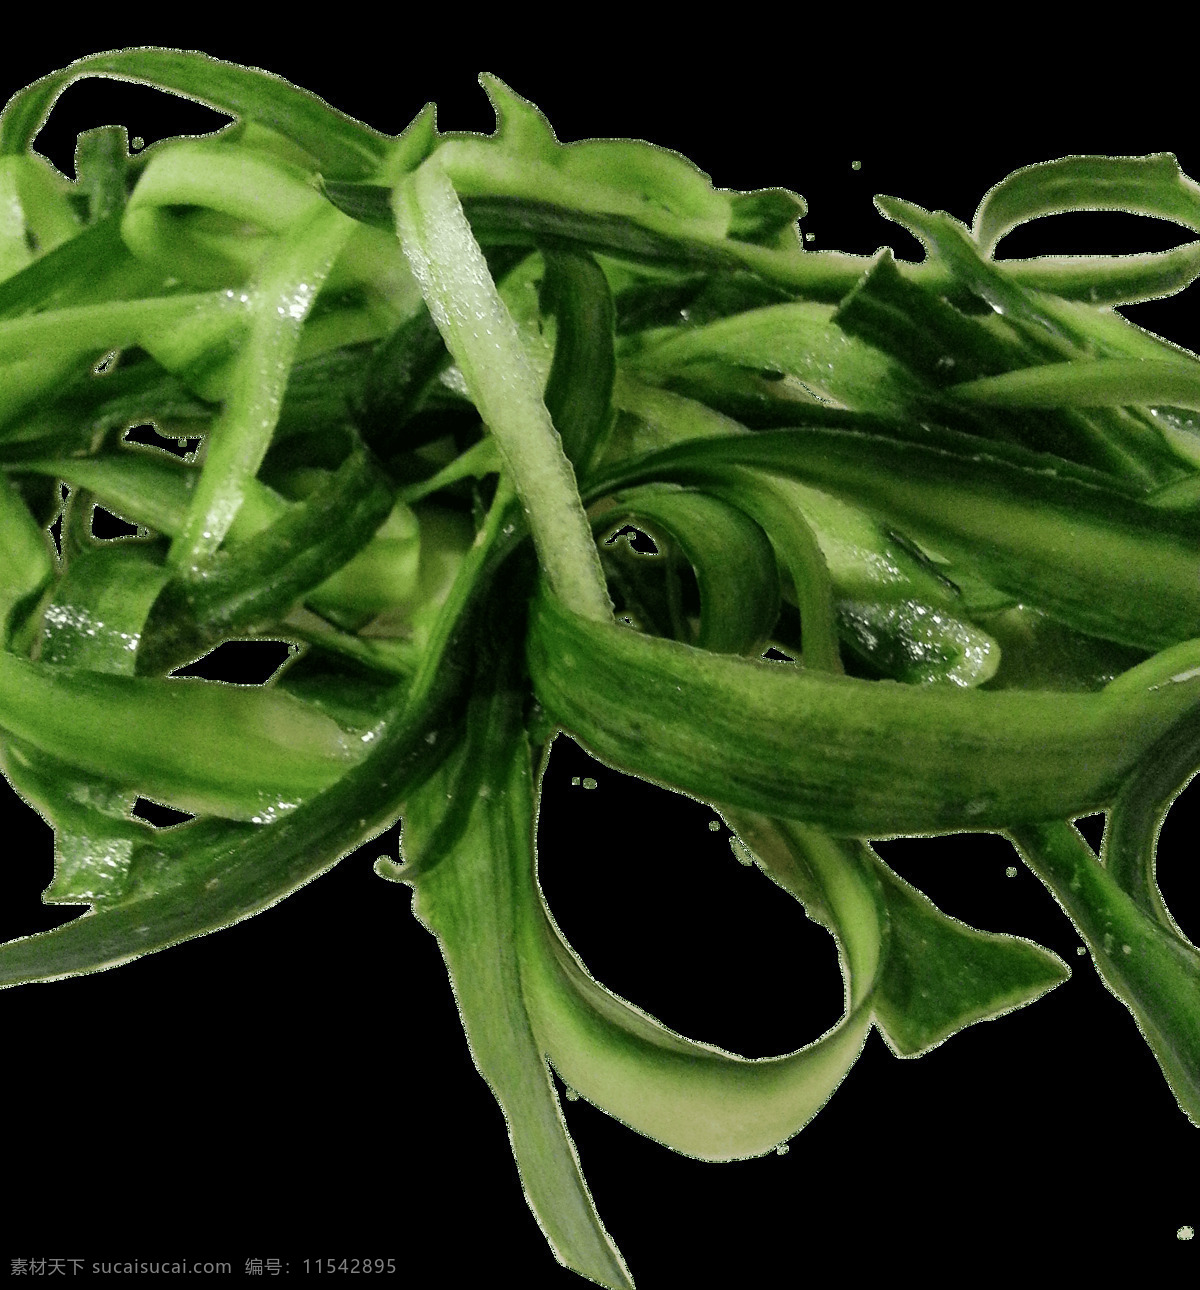 黄瓜皮 png图片 绿色 生物世界 蔬菜